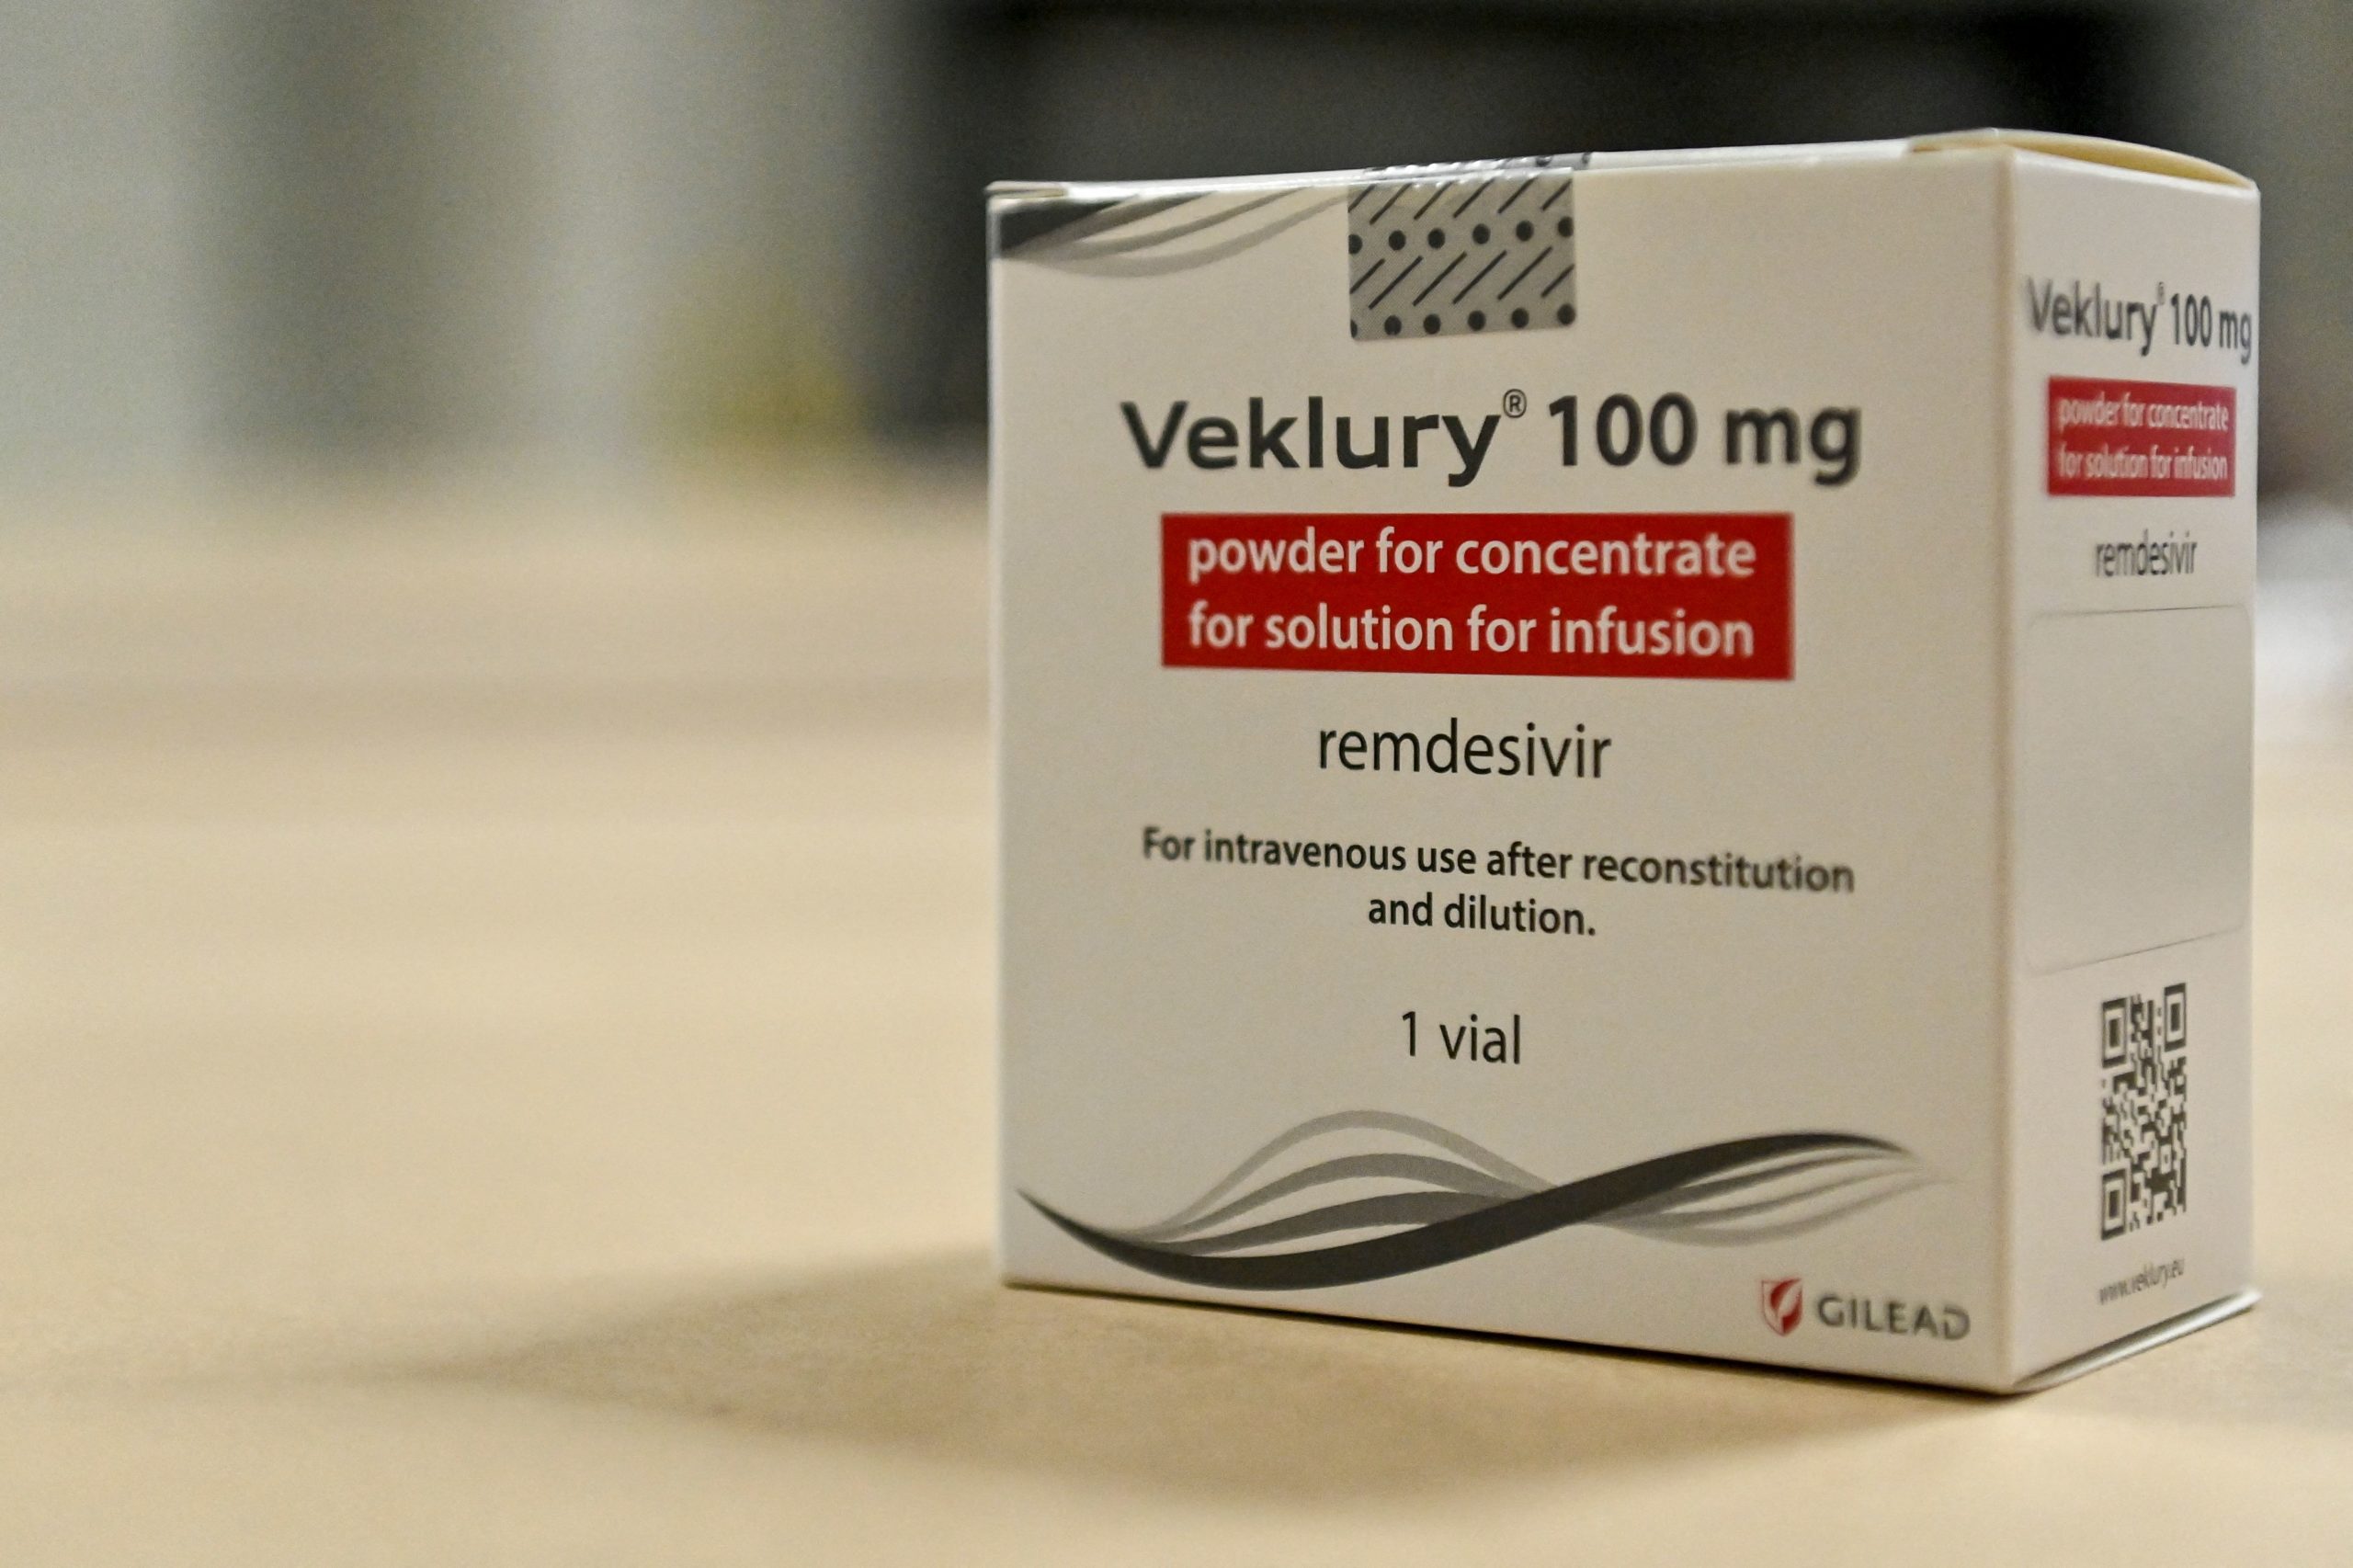 Cardboard boxes of antiviral drug Remdesivir, used to treat COVID-19. (Photo by DIRK WAEM/Belga/AFP via Getty Images)